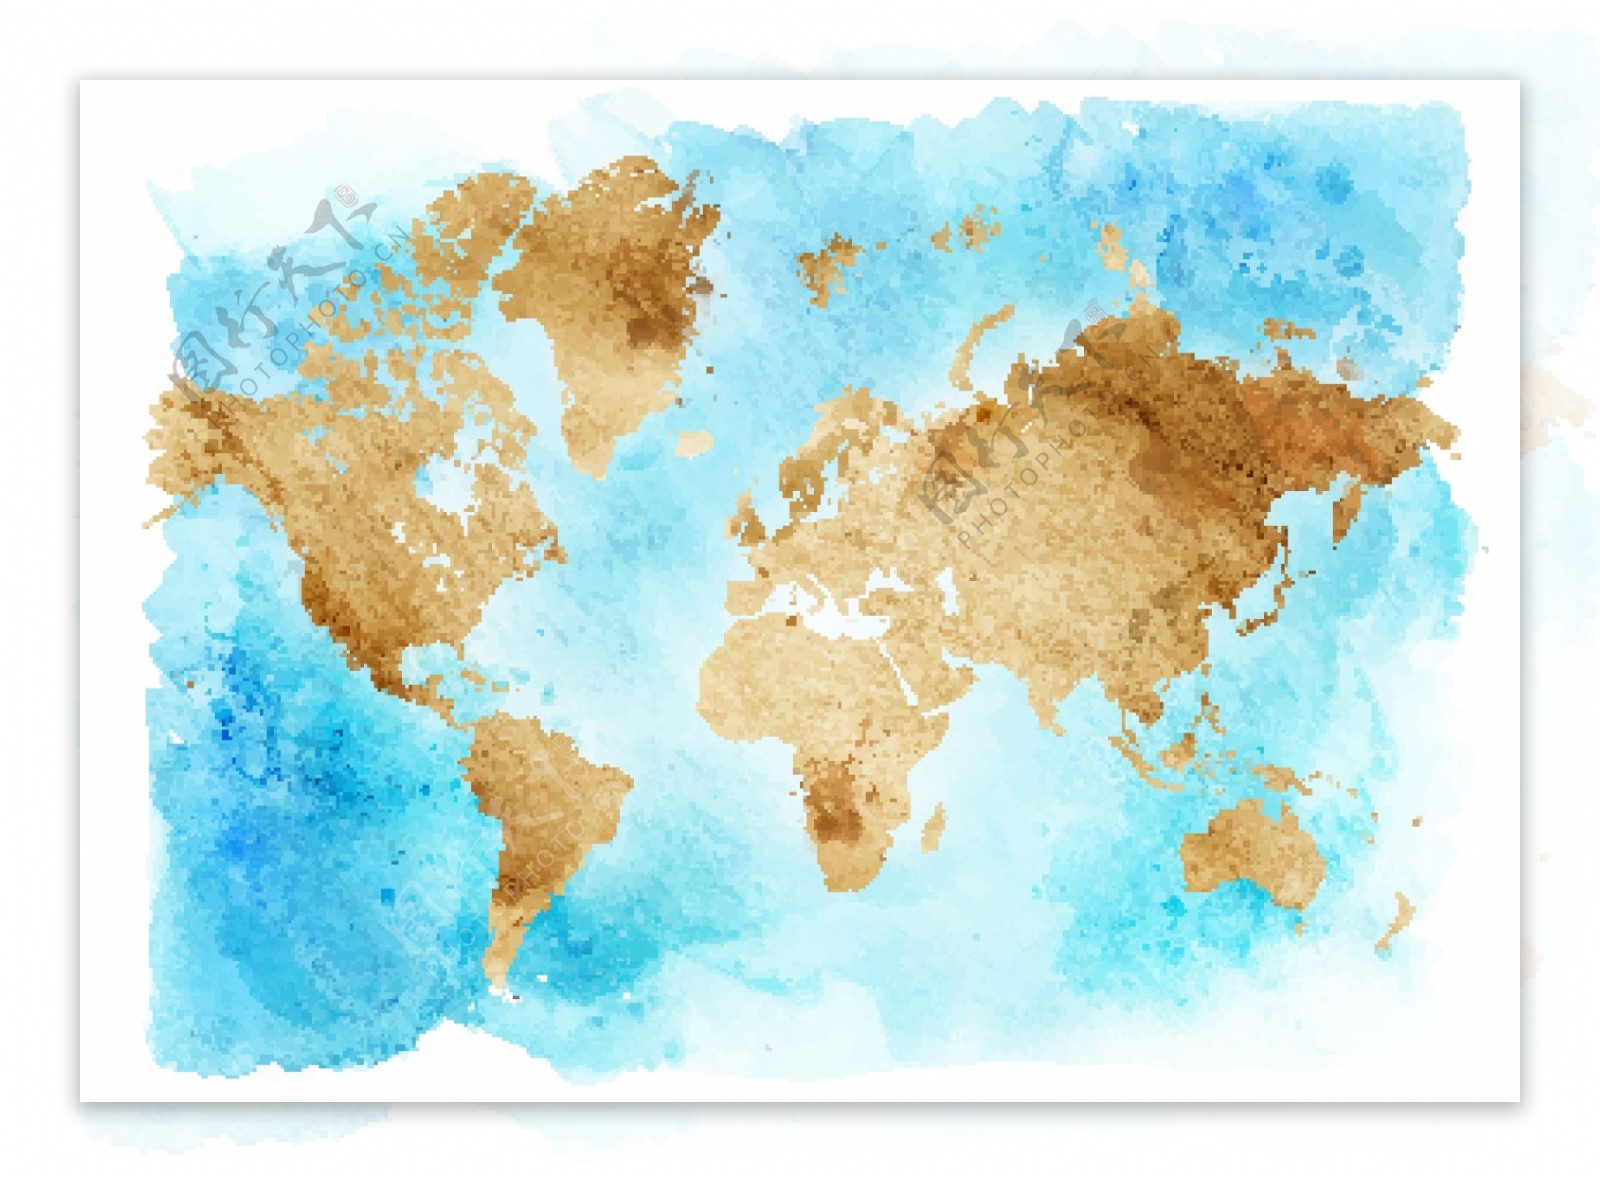 水彩牛皮纸效果世界地图背景矢量素材